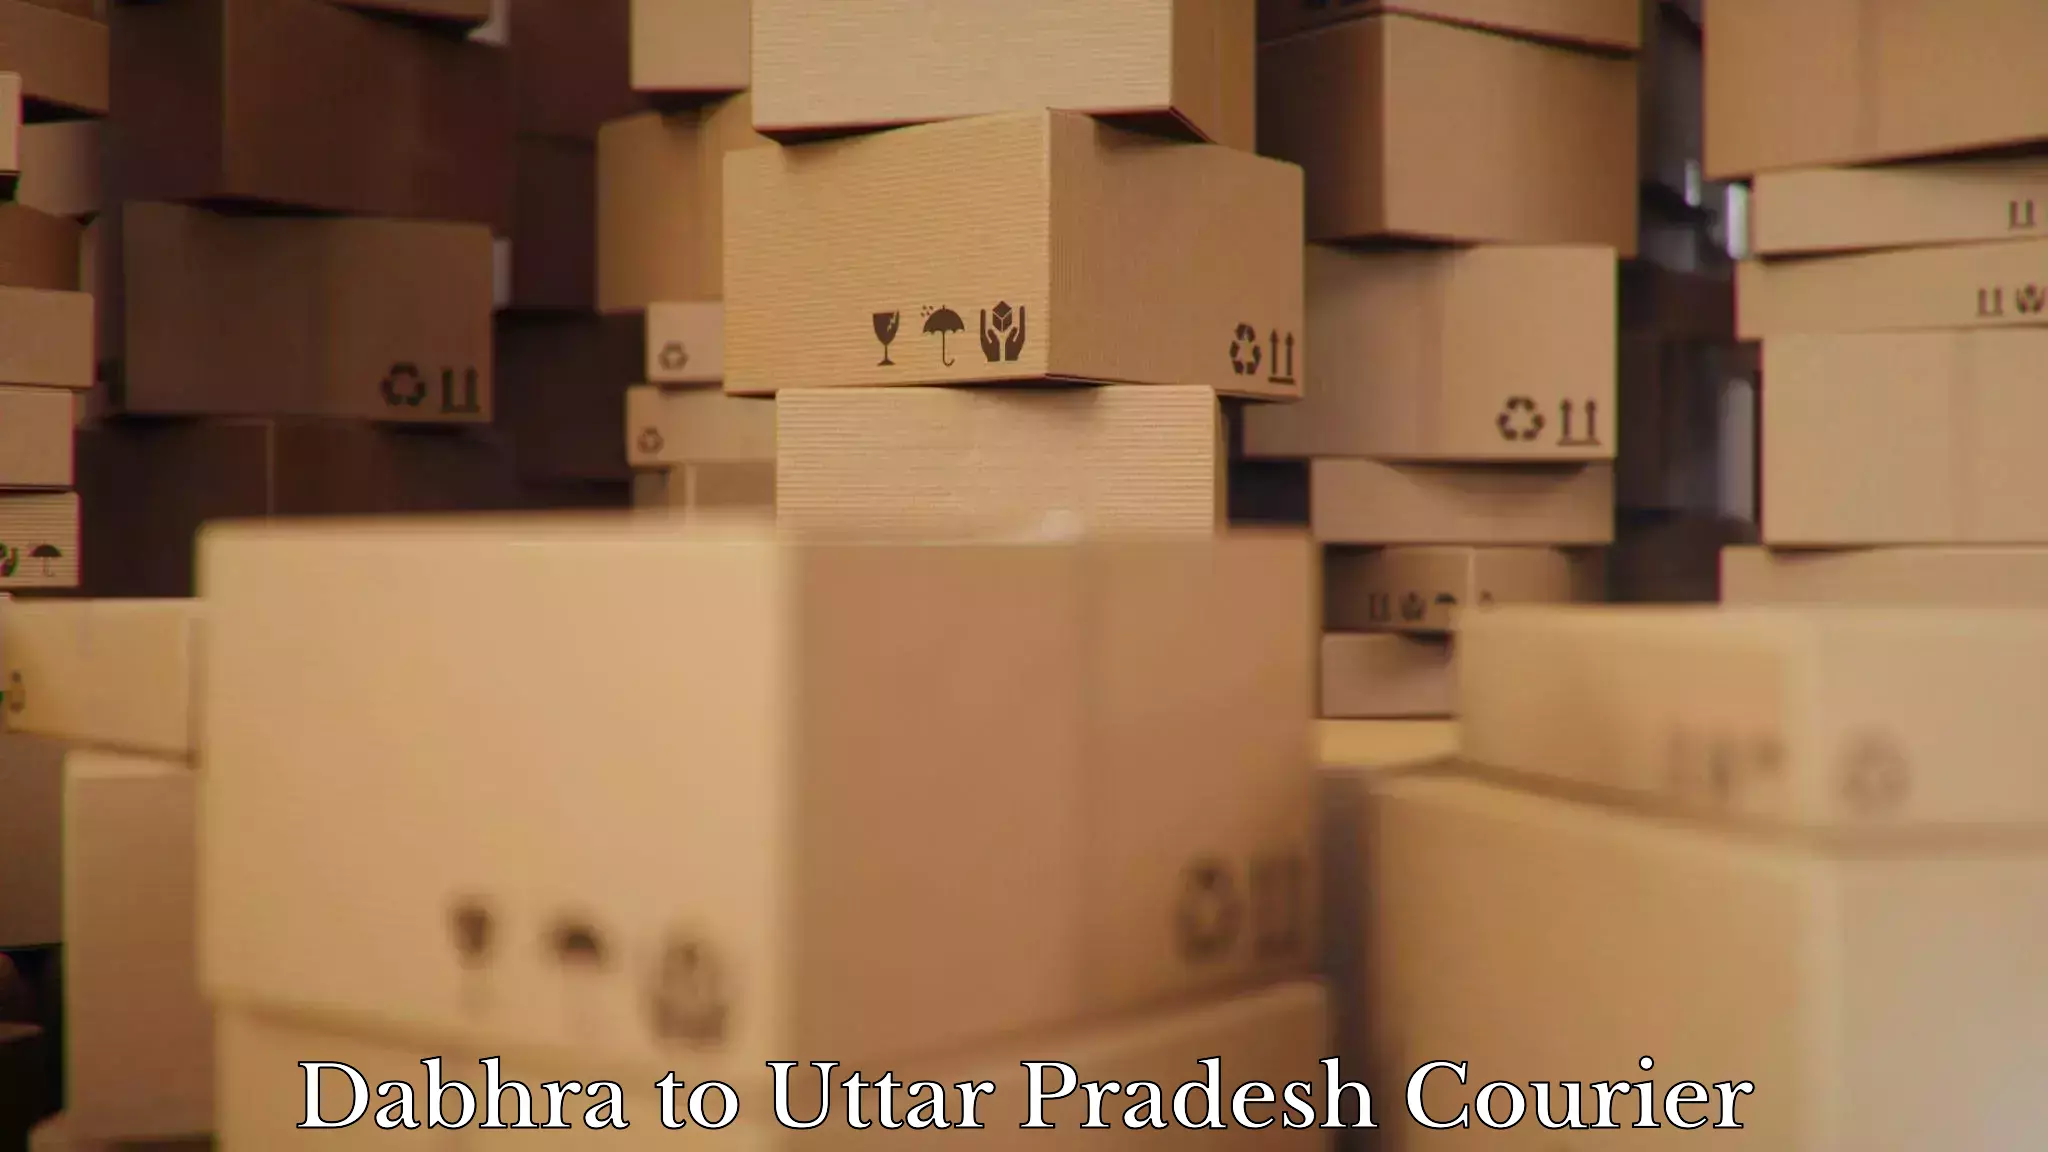 Full-service relocation in Dabhra to Uttar Pradesh